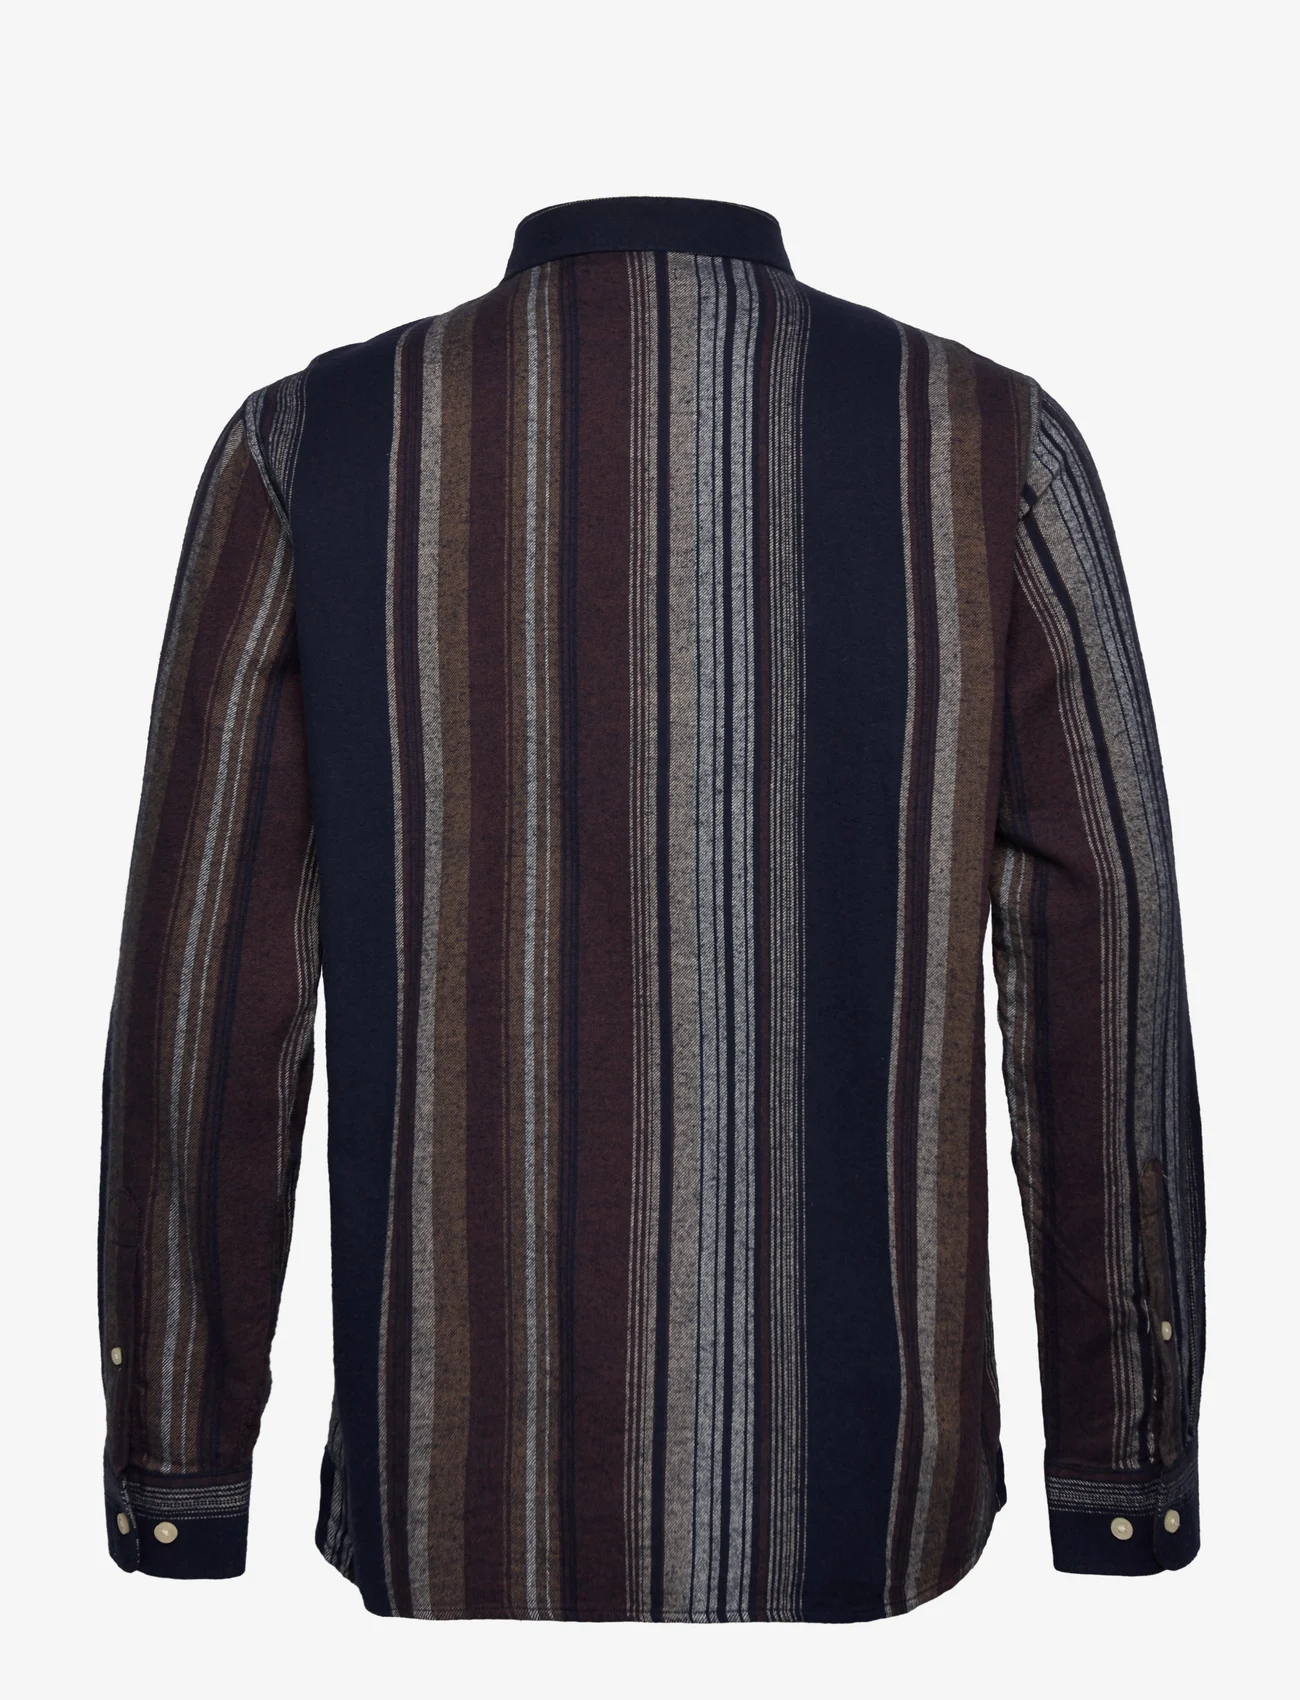 Knowledge Cotton Apparel - Loose fit double layer striped shir - chemises décontractées - multi color stripe - 1